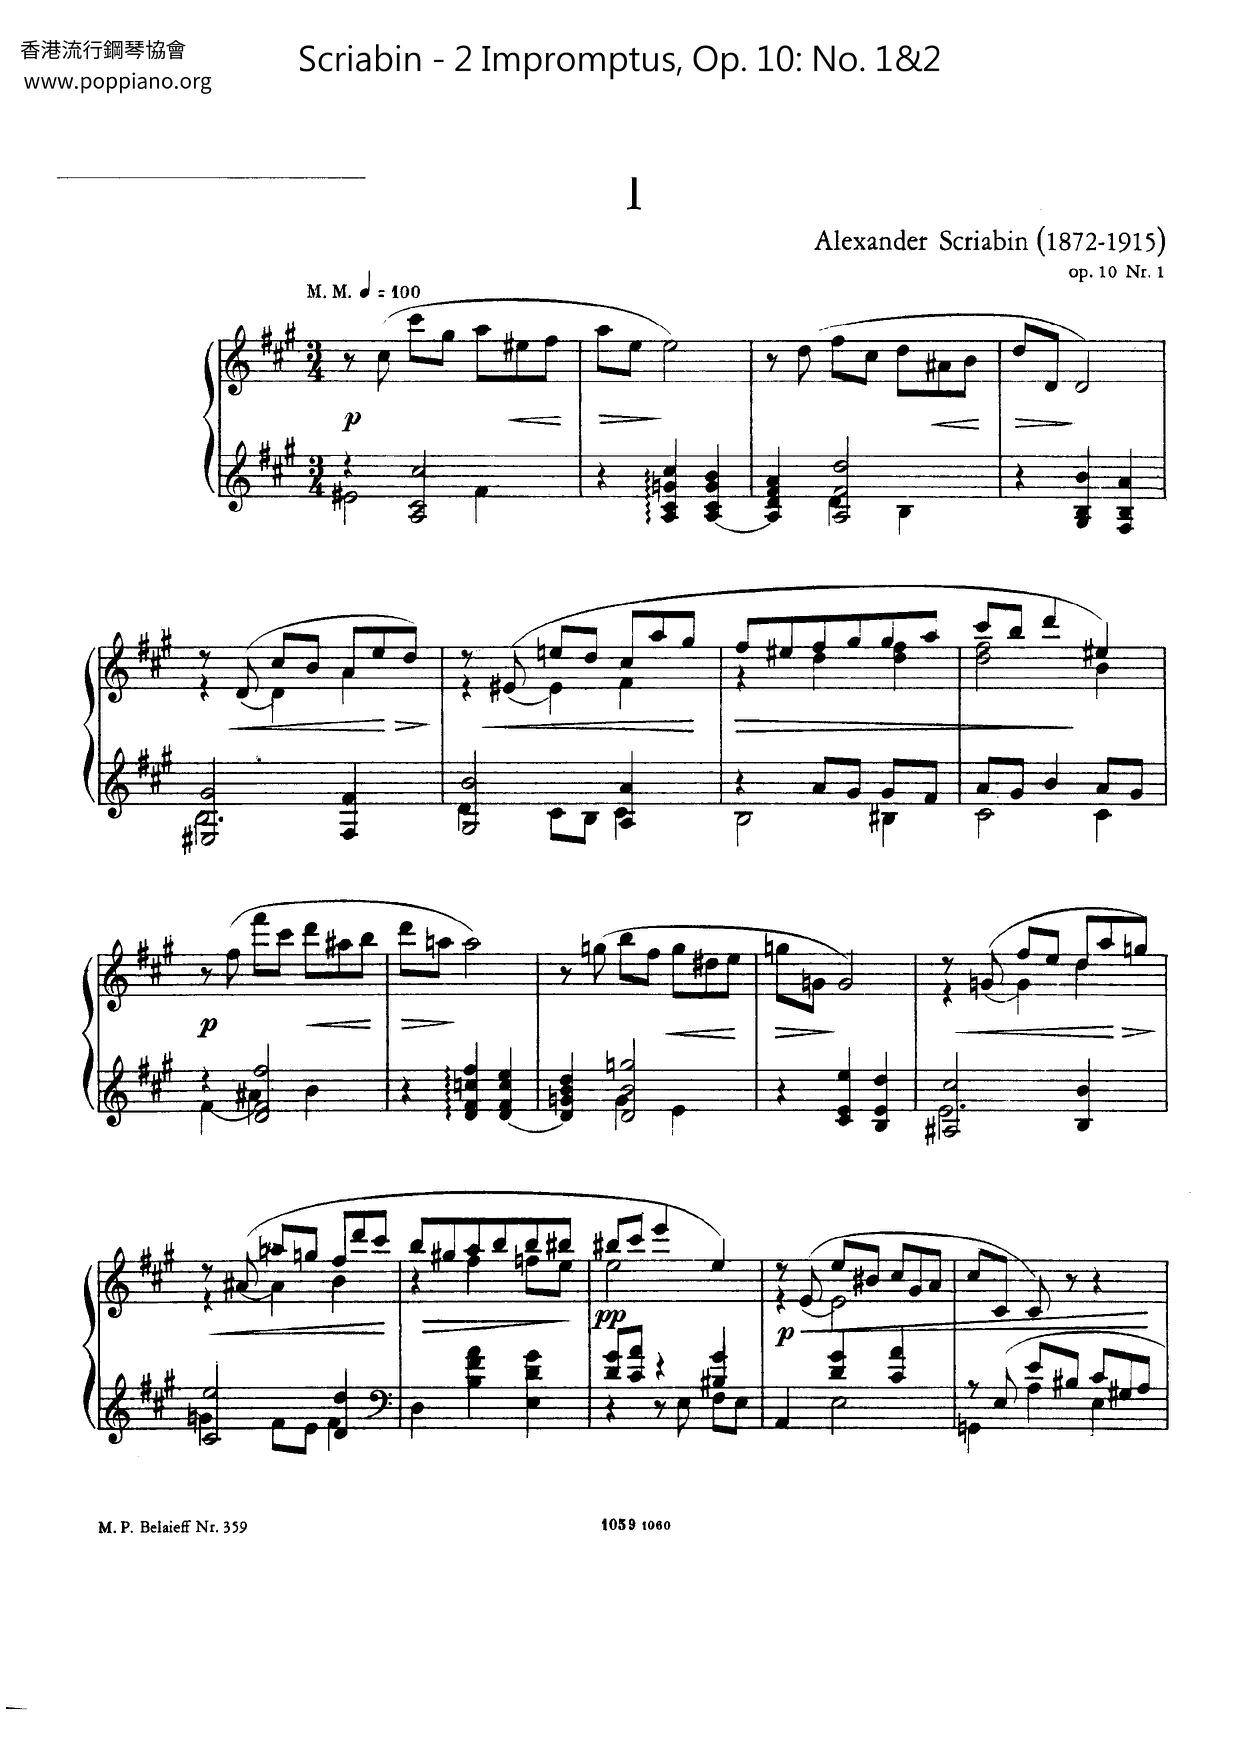 2 Impromptus, Op. 10: No. 1&2ピアノ譜